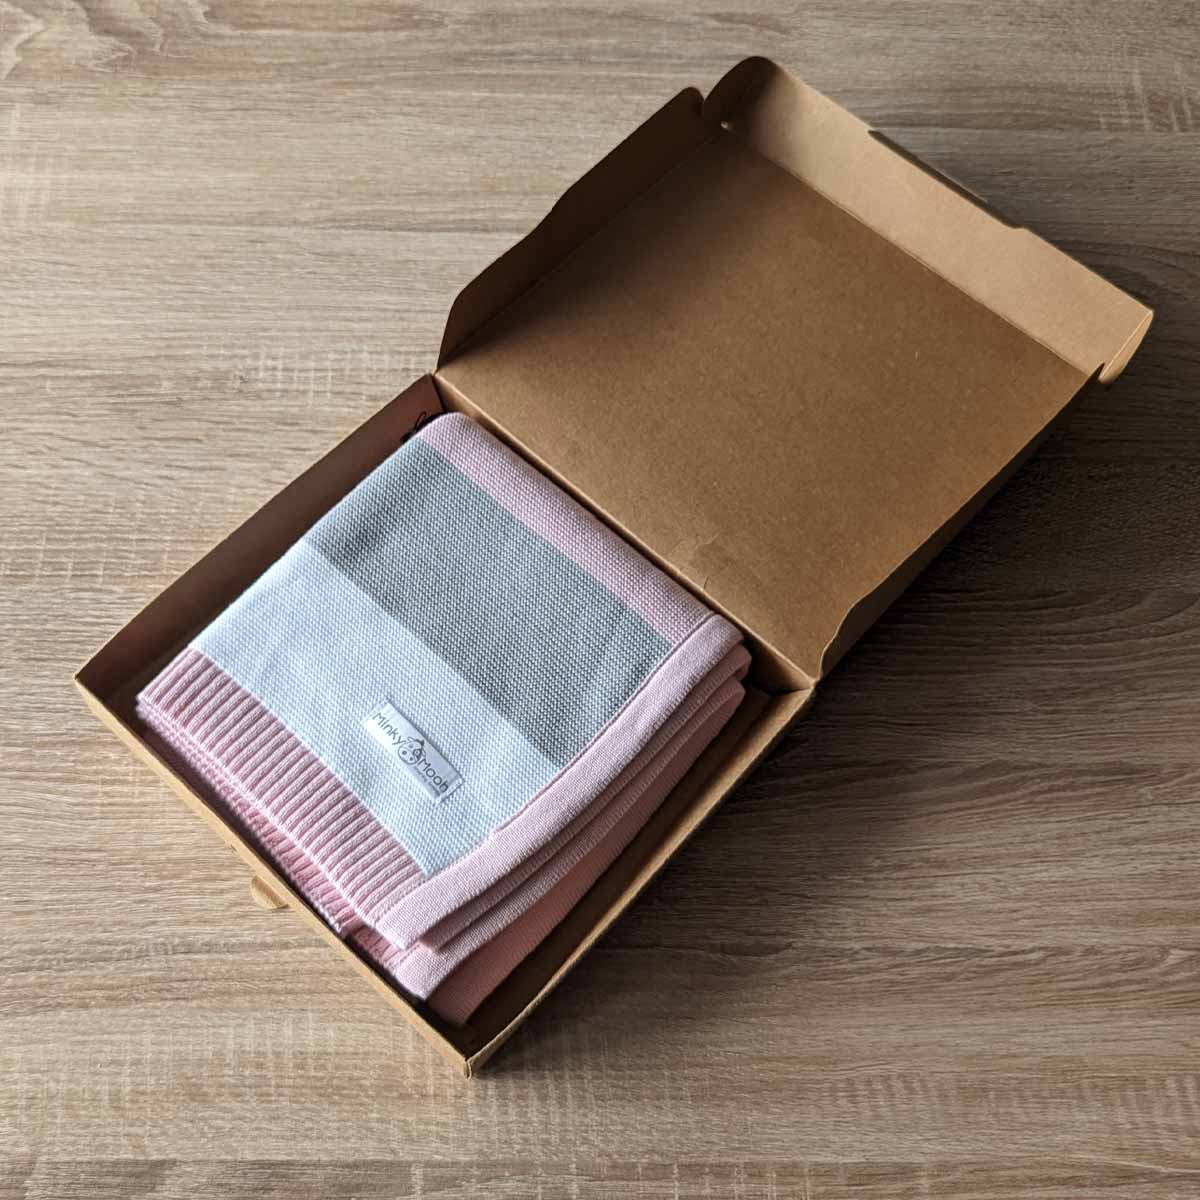 Gefaltete rosa-grau-weiß gestreifte Bio-Baumwolldecke in einer offenen braunen Kartonverpackung.